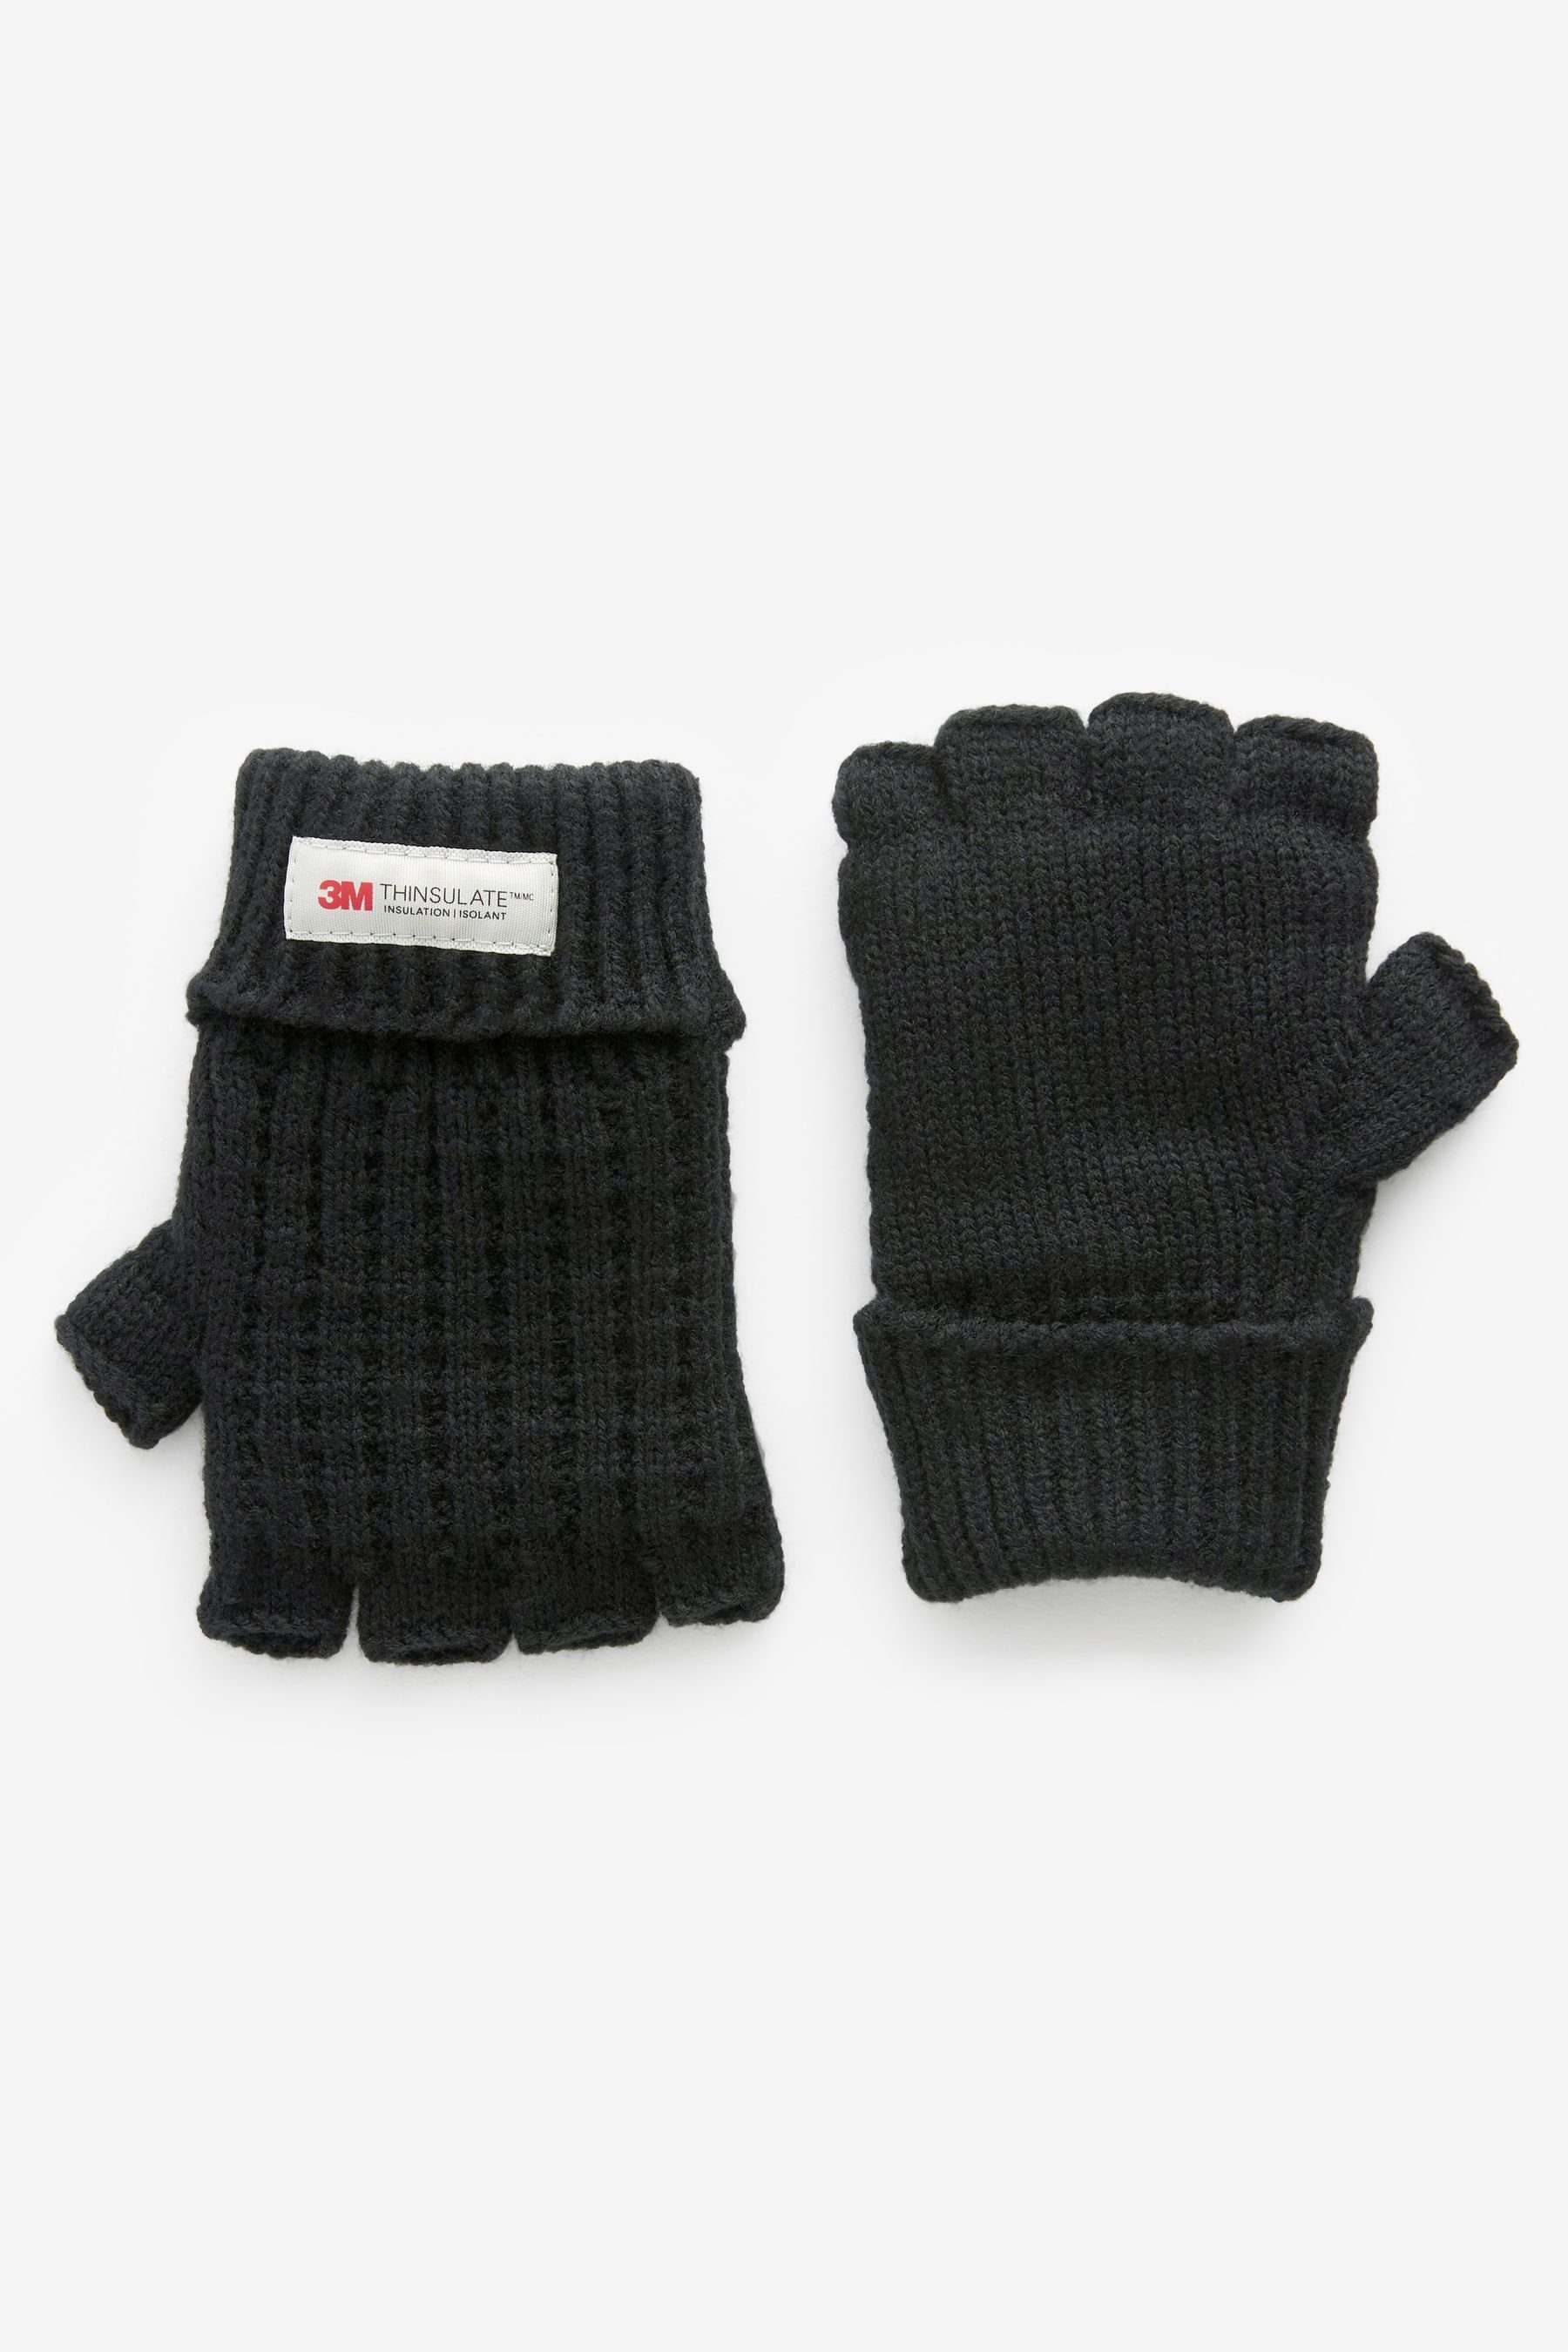 Next Strickhandschuhe Fingerlose Handschuhe | Strickhandschuhe